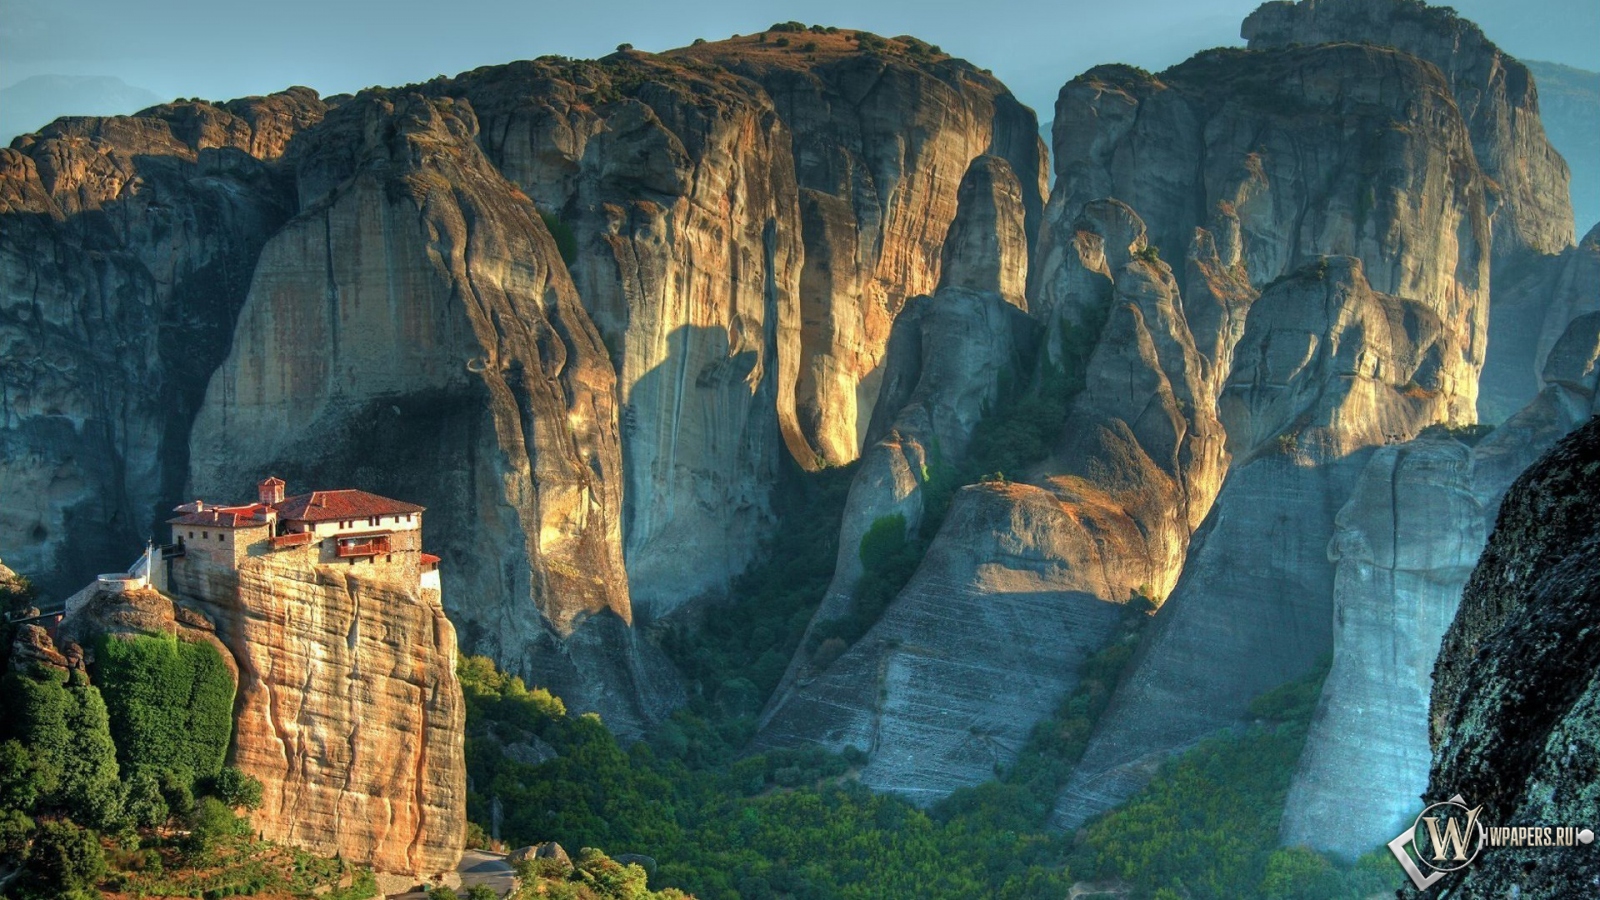 Монастырь в Метеоре Греция 1600x900